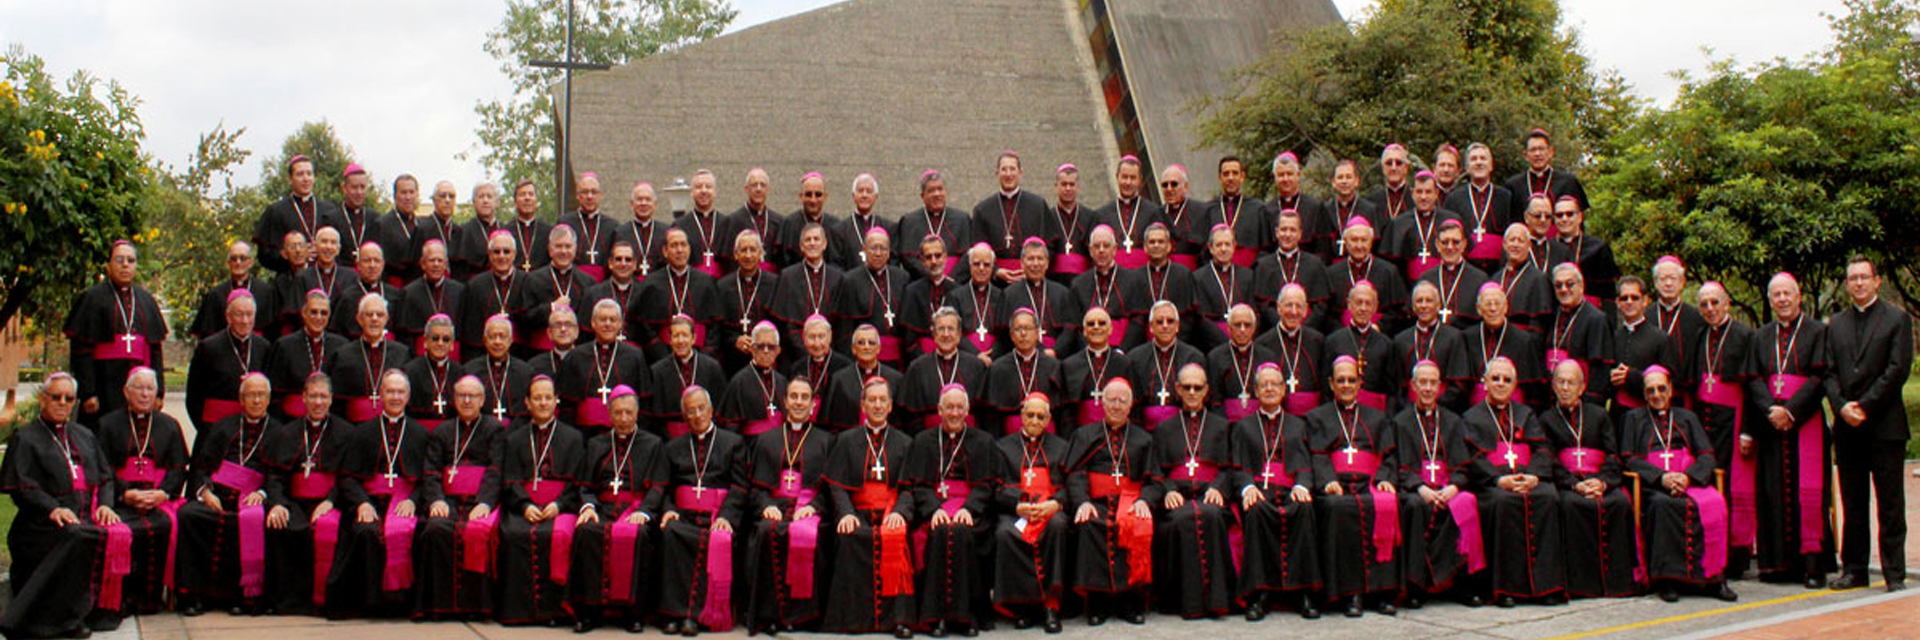 Obispos colombianos